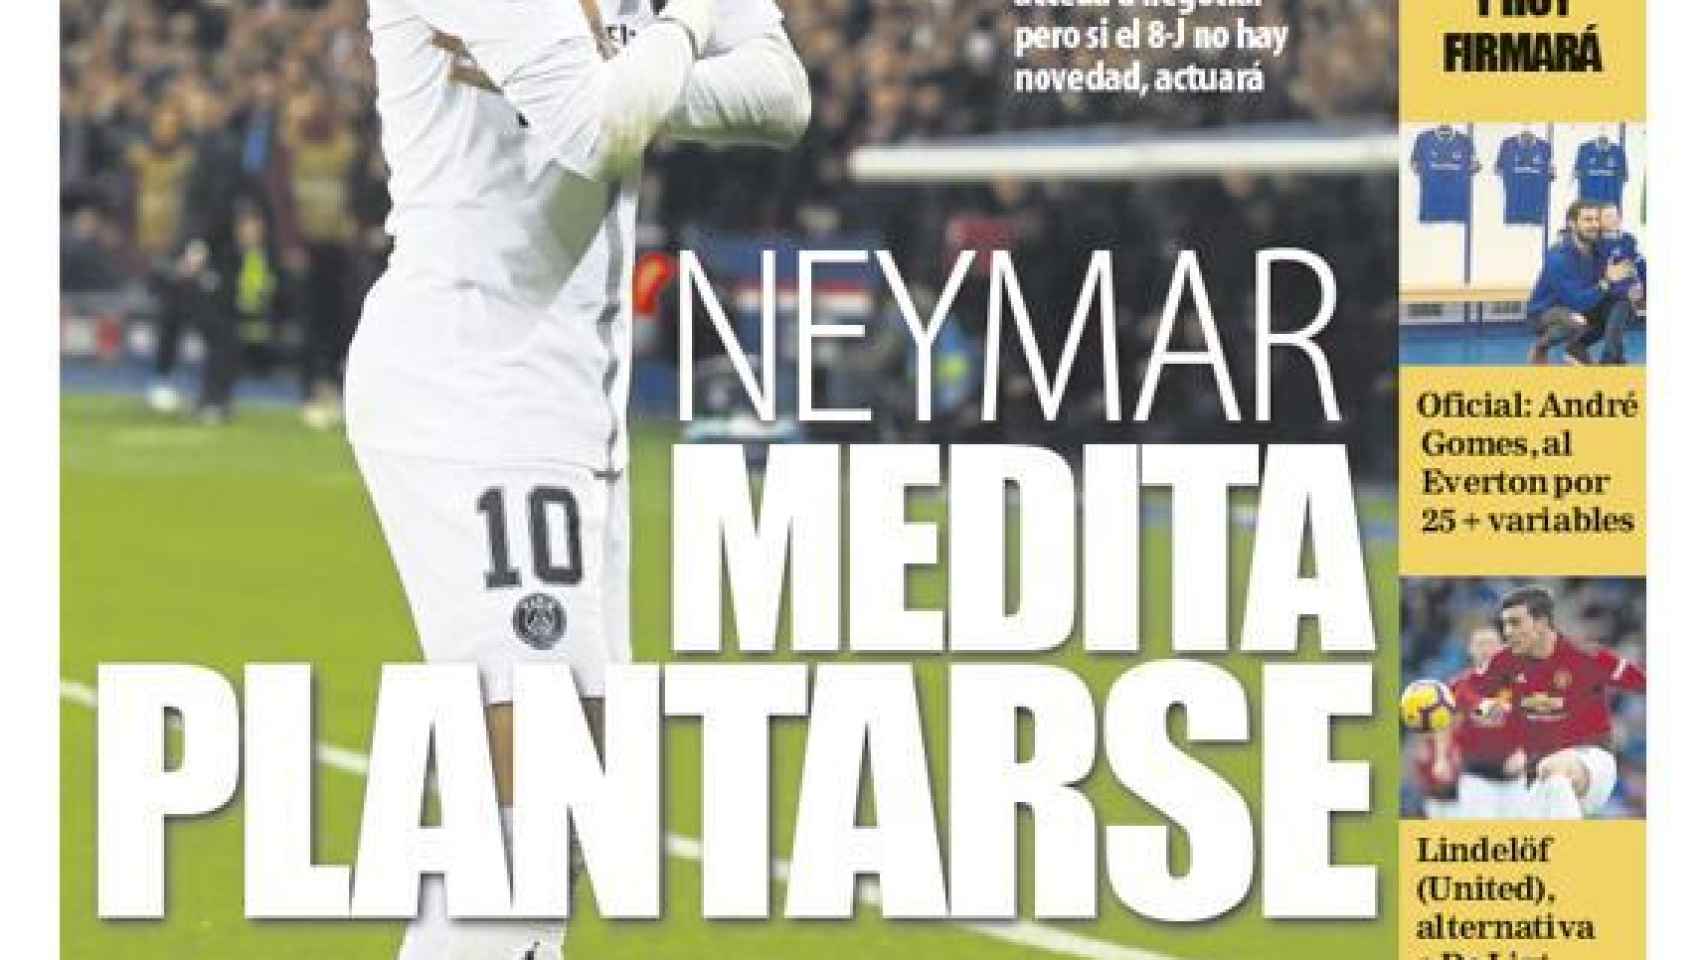 La portada del diario Mundo Deportivo (26/06/2019)